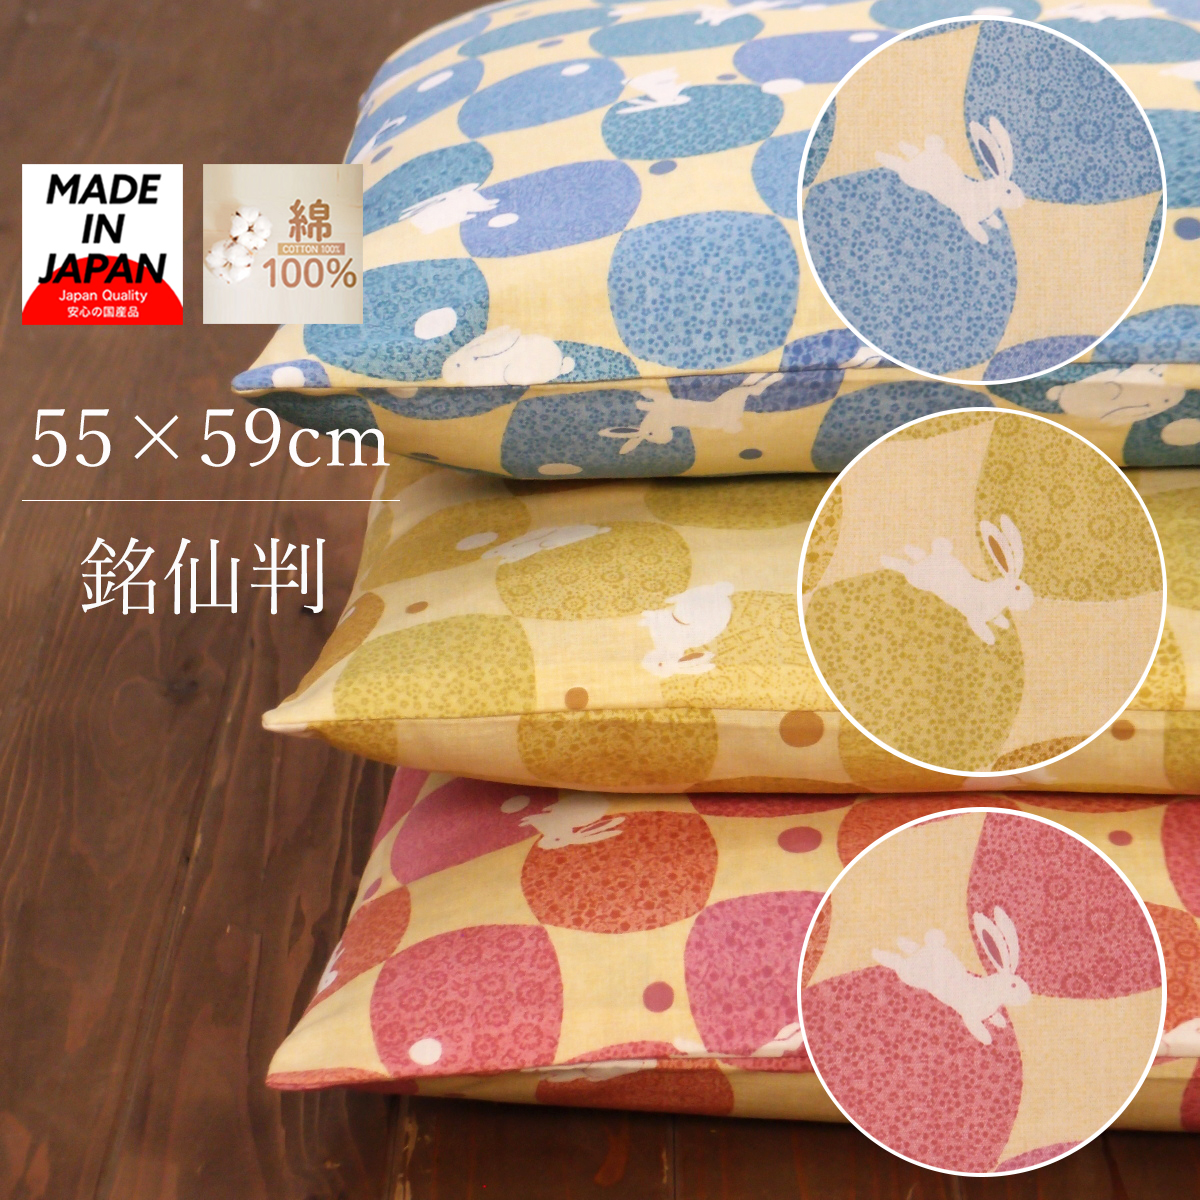 座布団カバー 55×59 かわいいうさぎ柄 日本製 地元三河で生産されています【5枚以上で送料半額10枚以上で送料無料】 ざぶとんカバー 55×59cm 銘仙判 ネコポスにも対応いたします